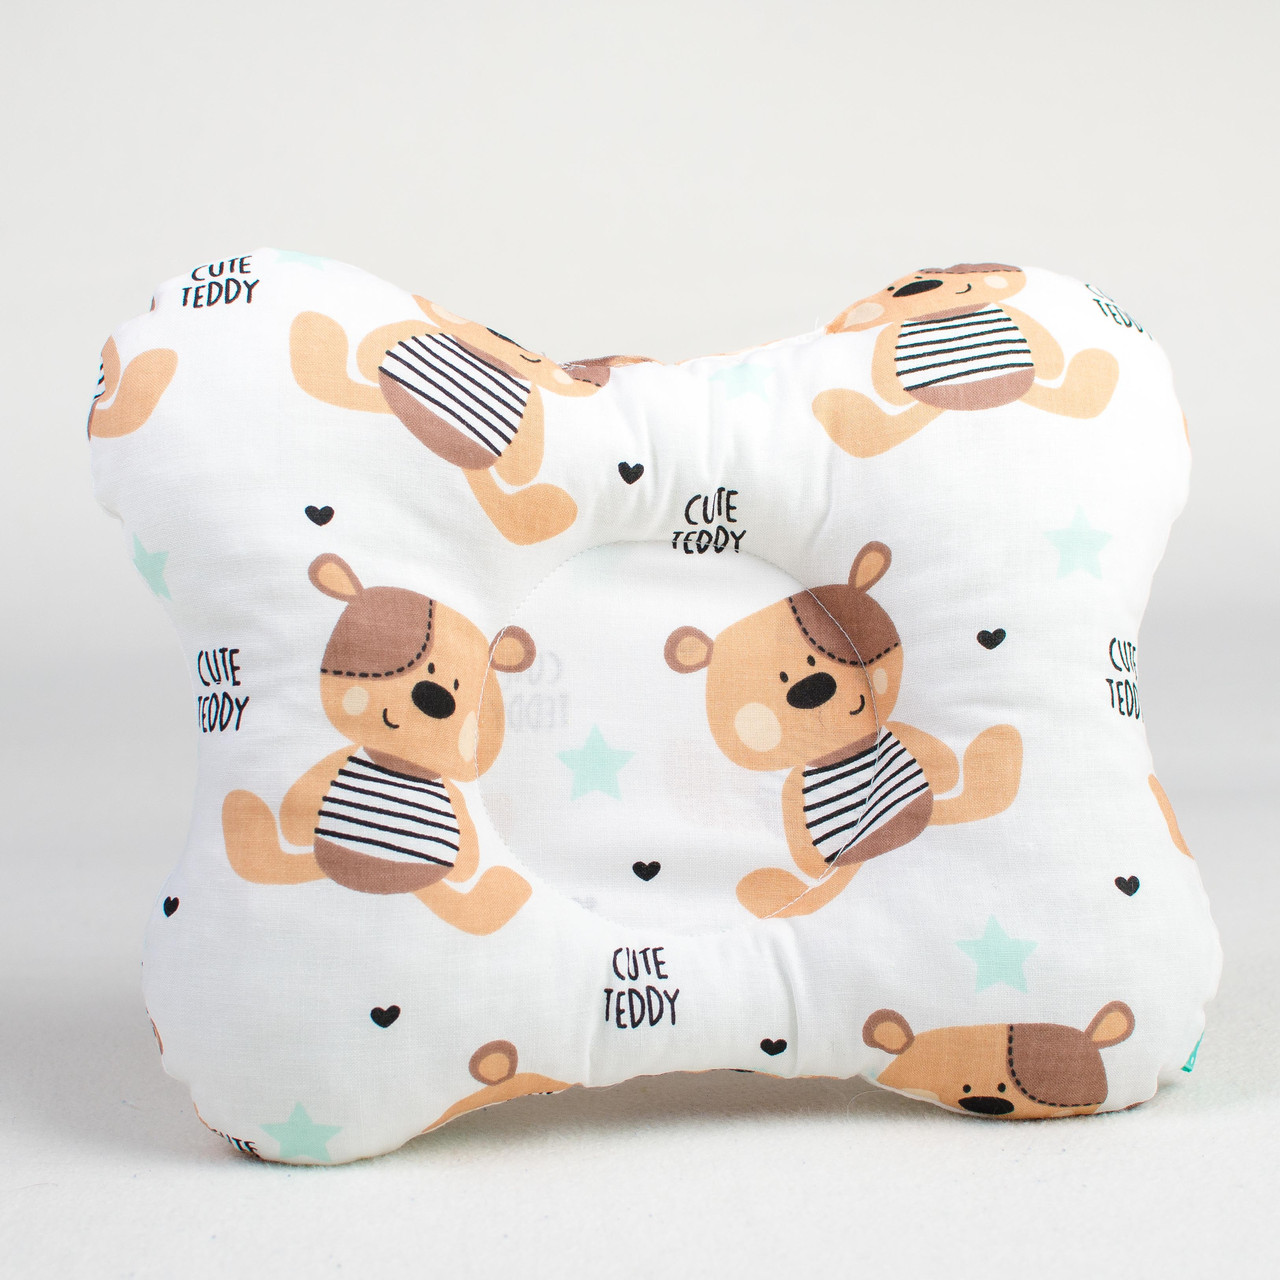 Купить подушку для новорожденных